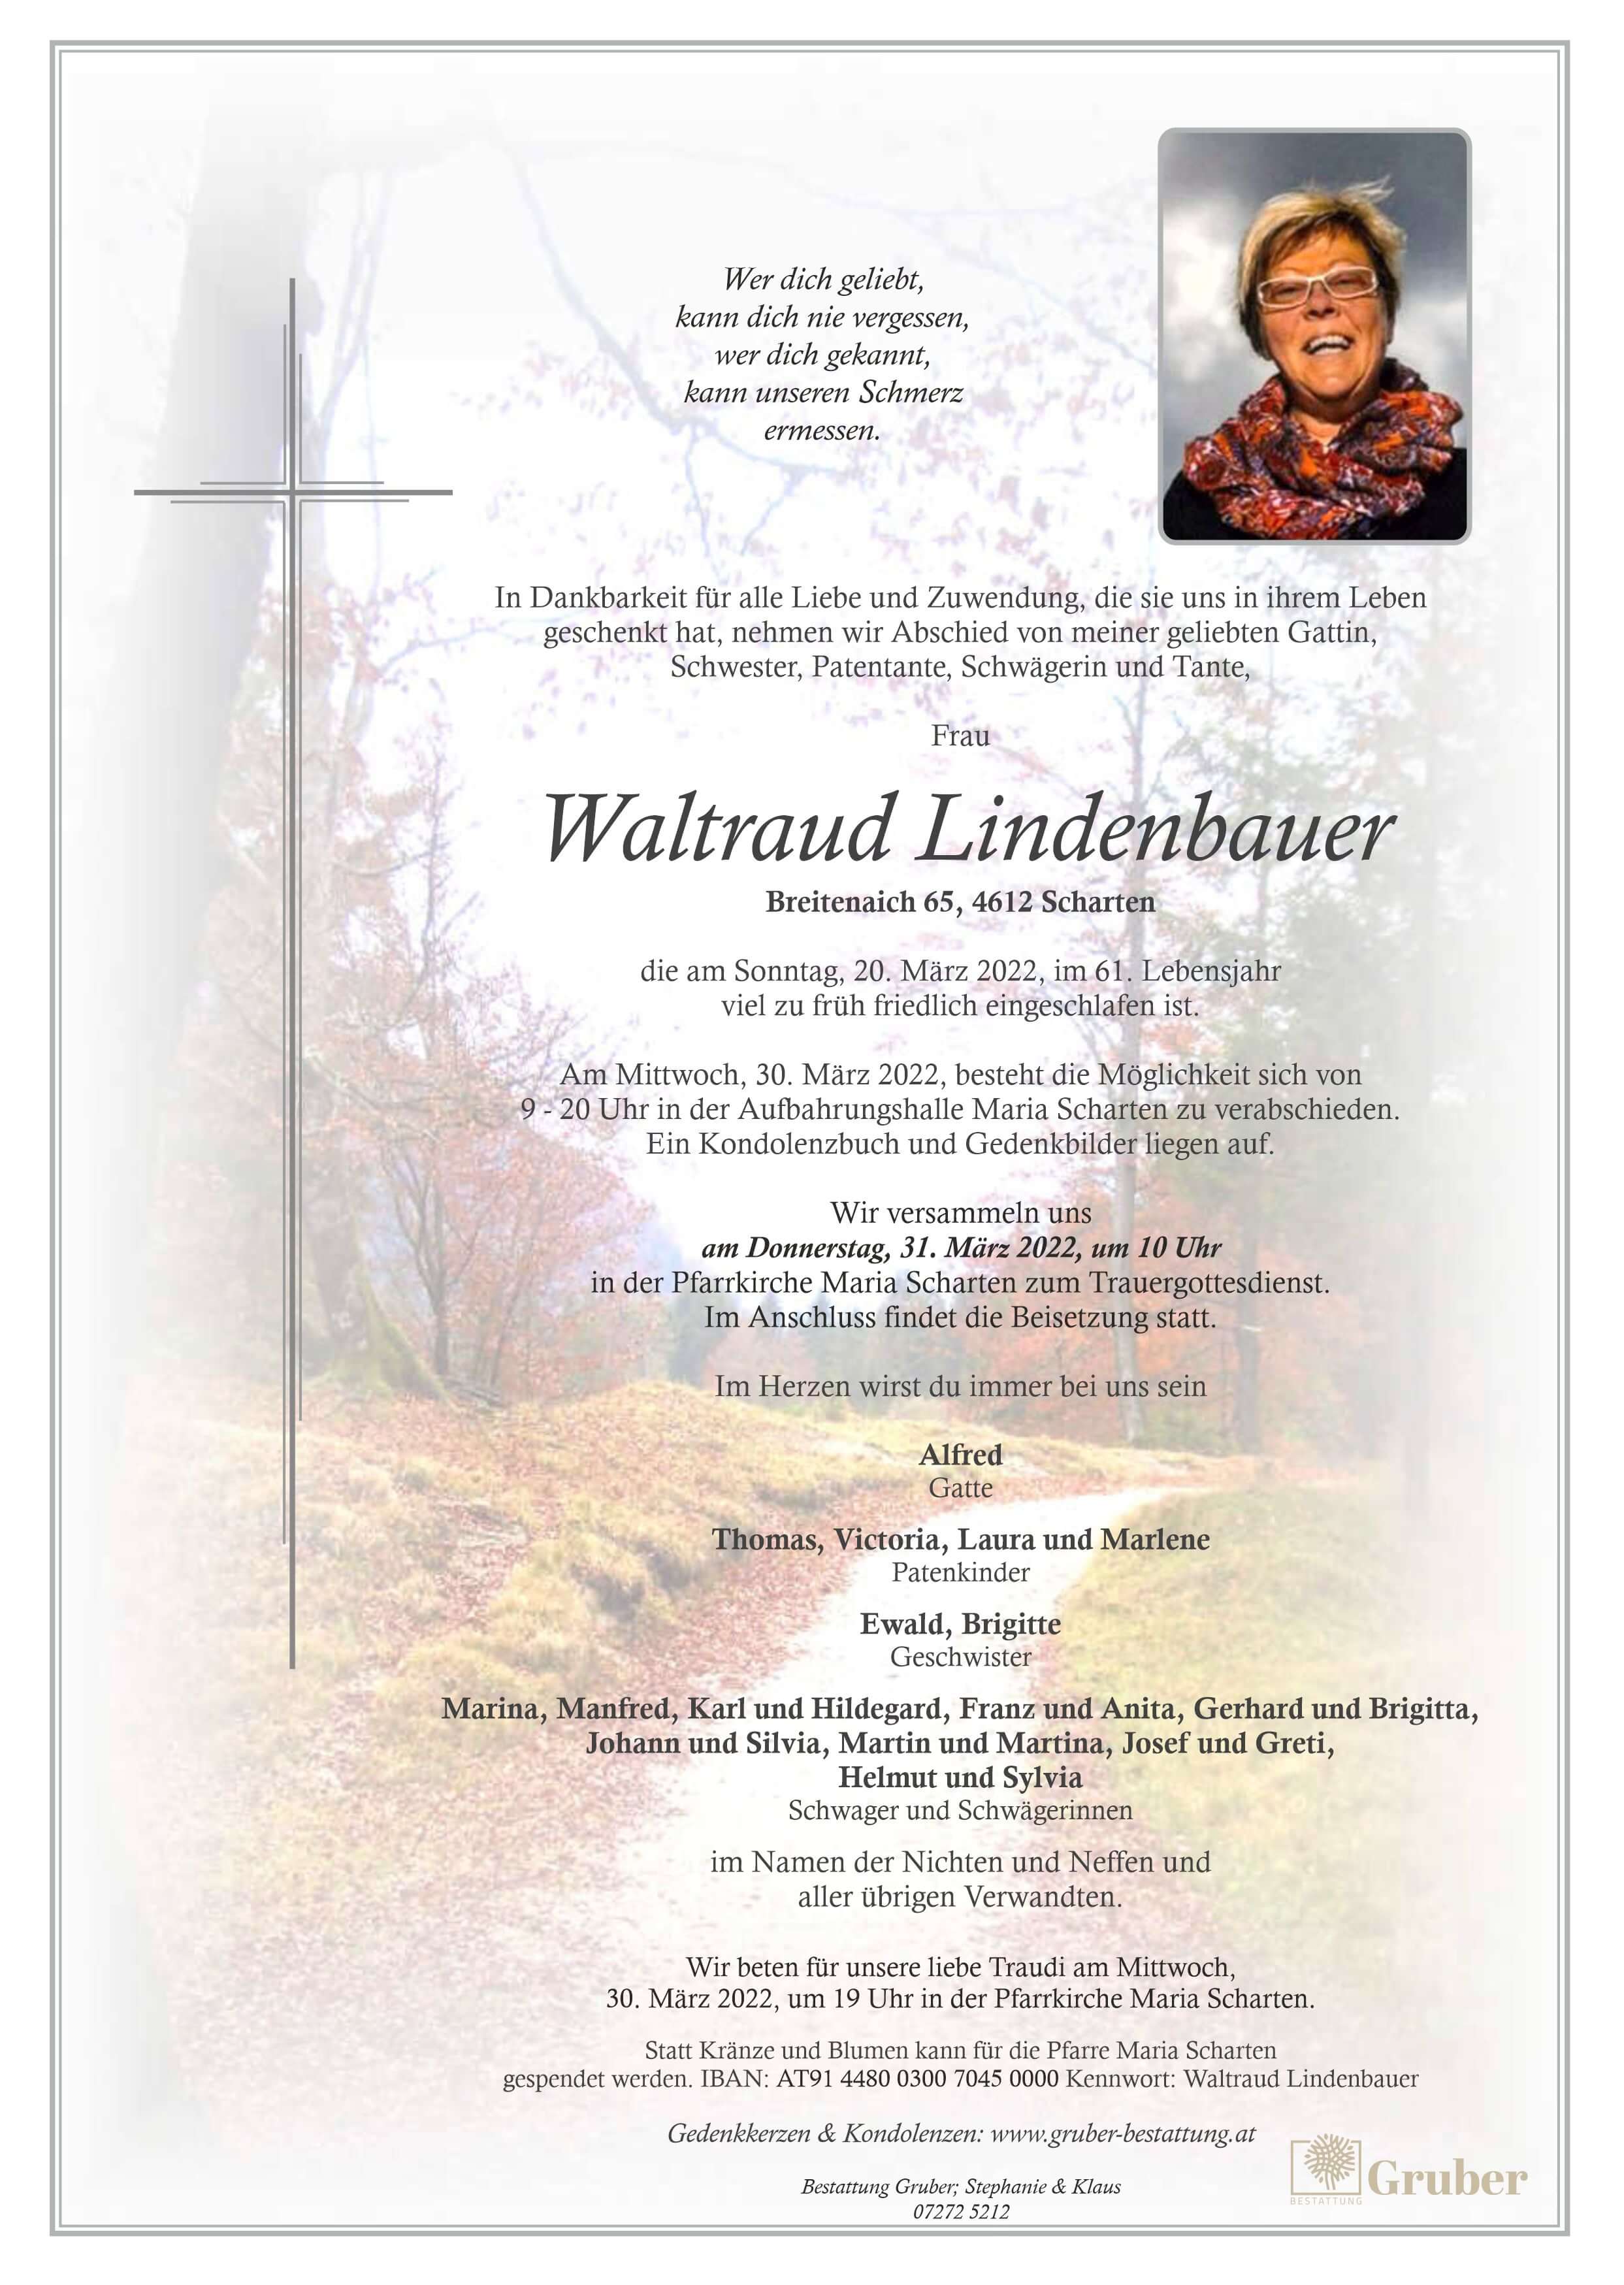 Waltraud Lindenbauer (Scharten Kath)